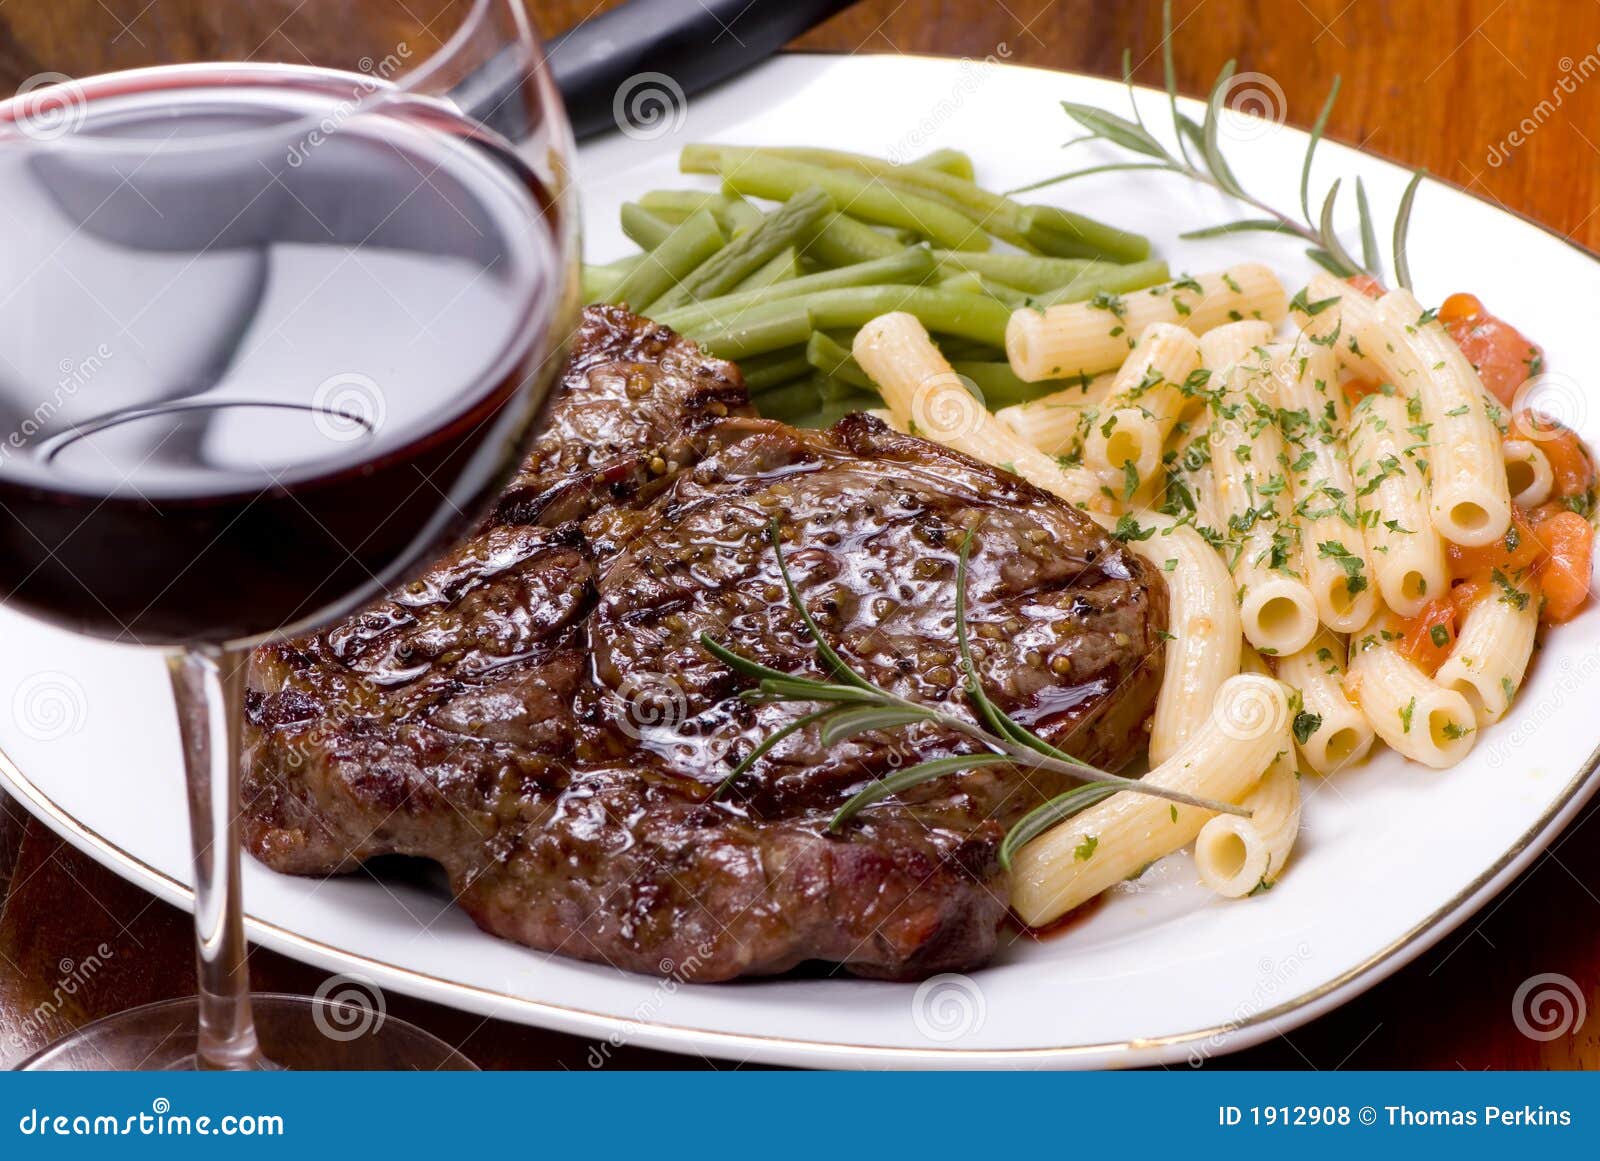 rib-eye-steak-dinner-5-1912908.jpg